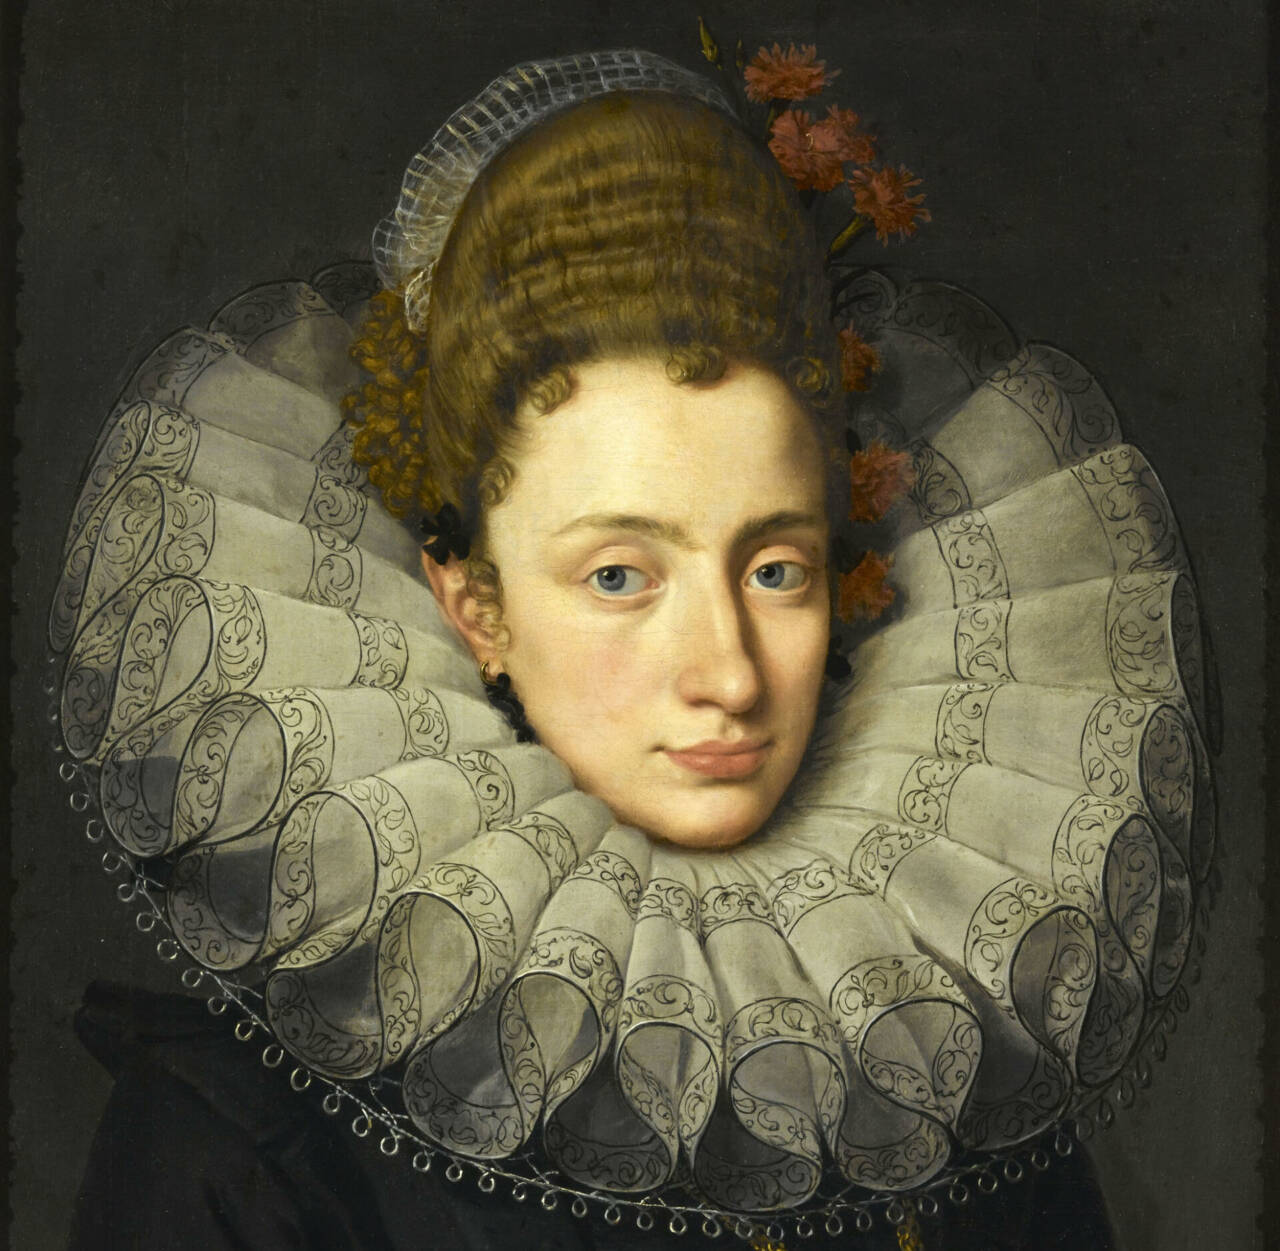 Rubens les portraits de Cour